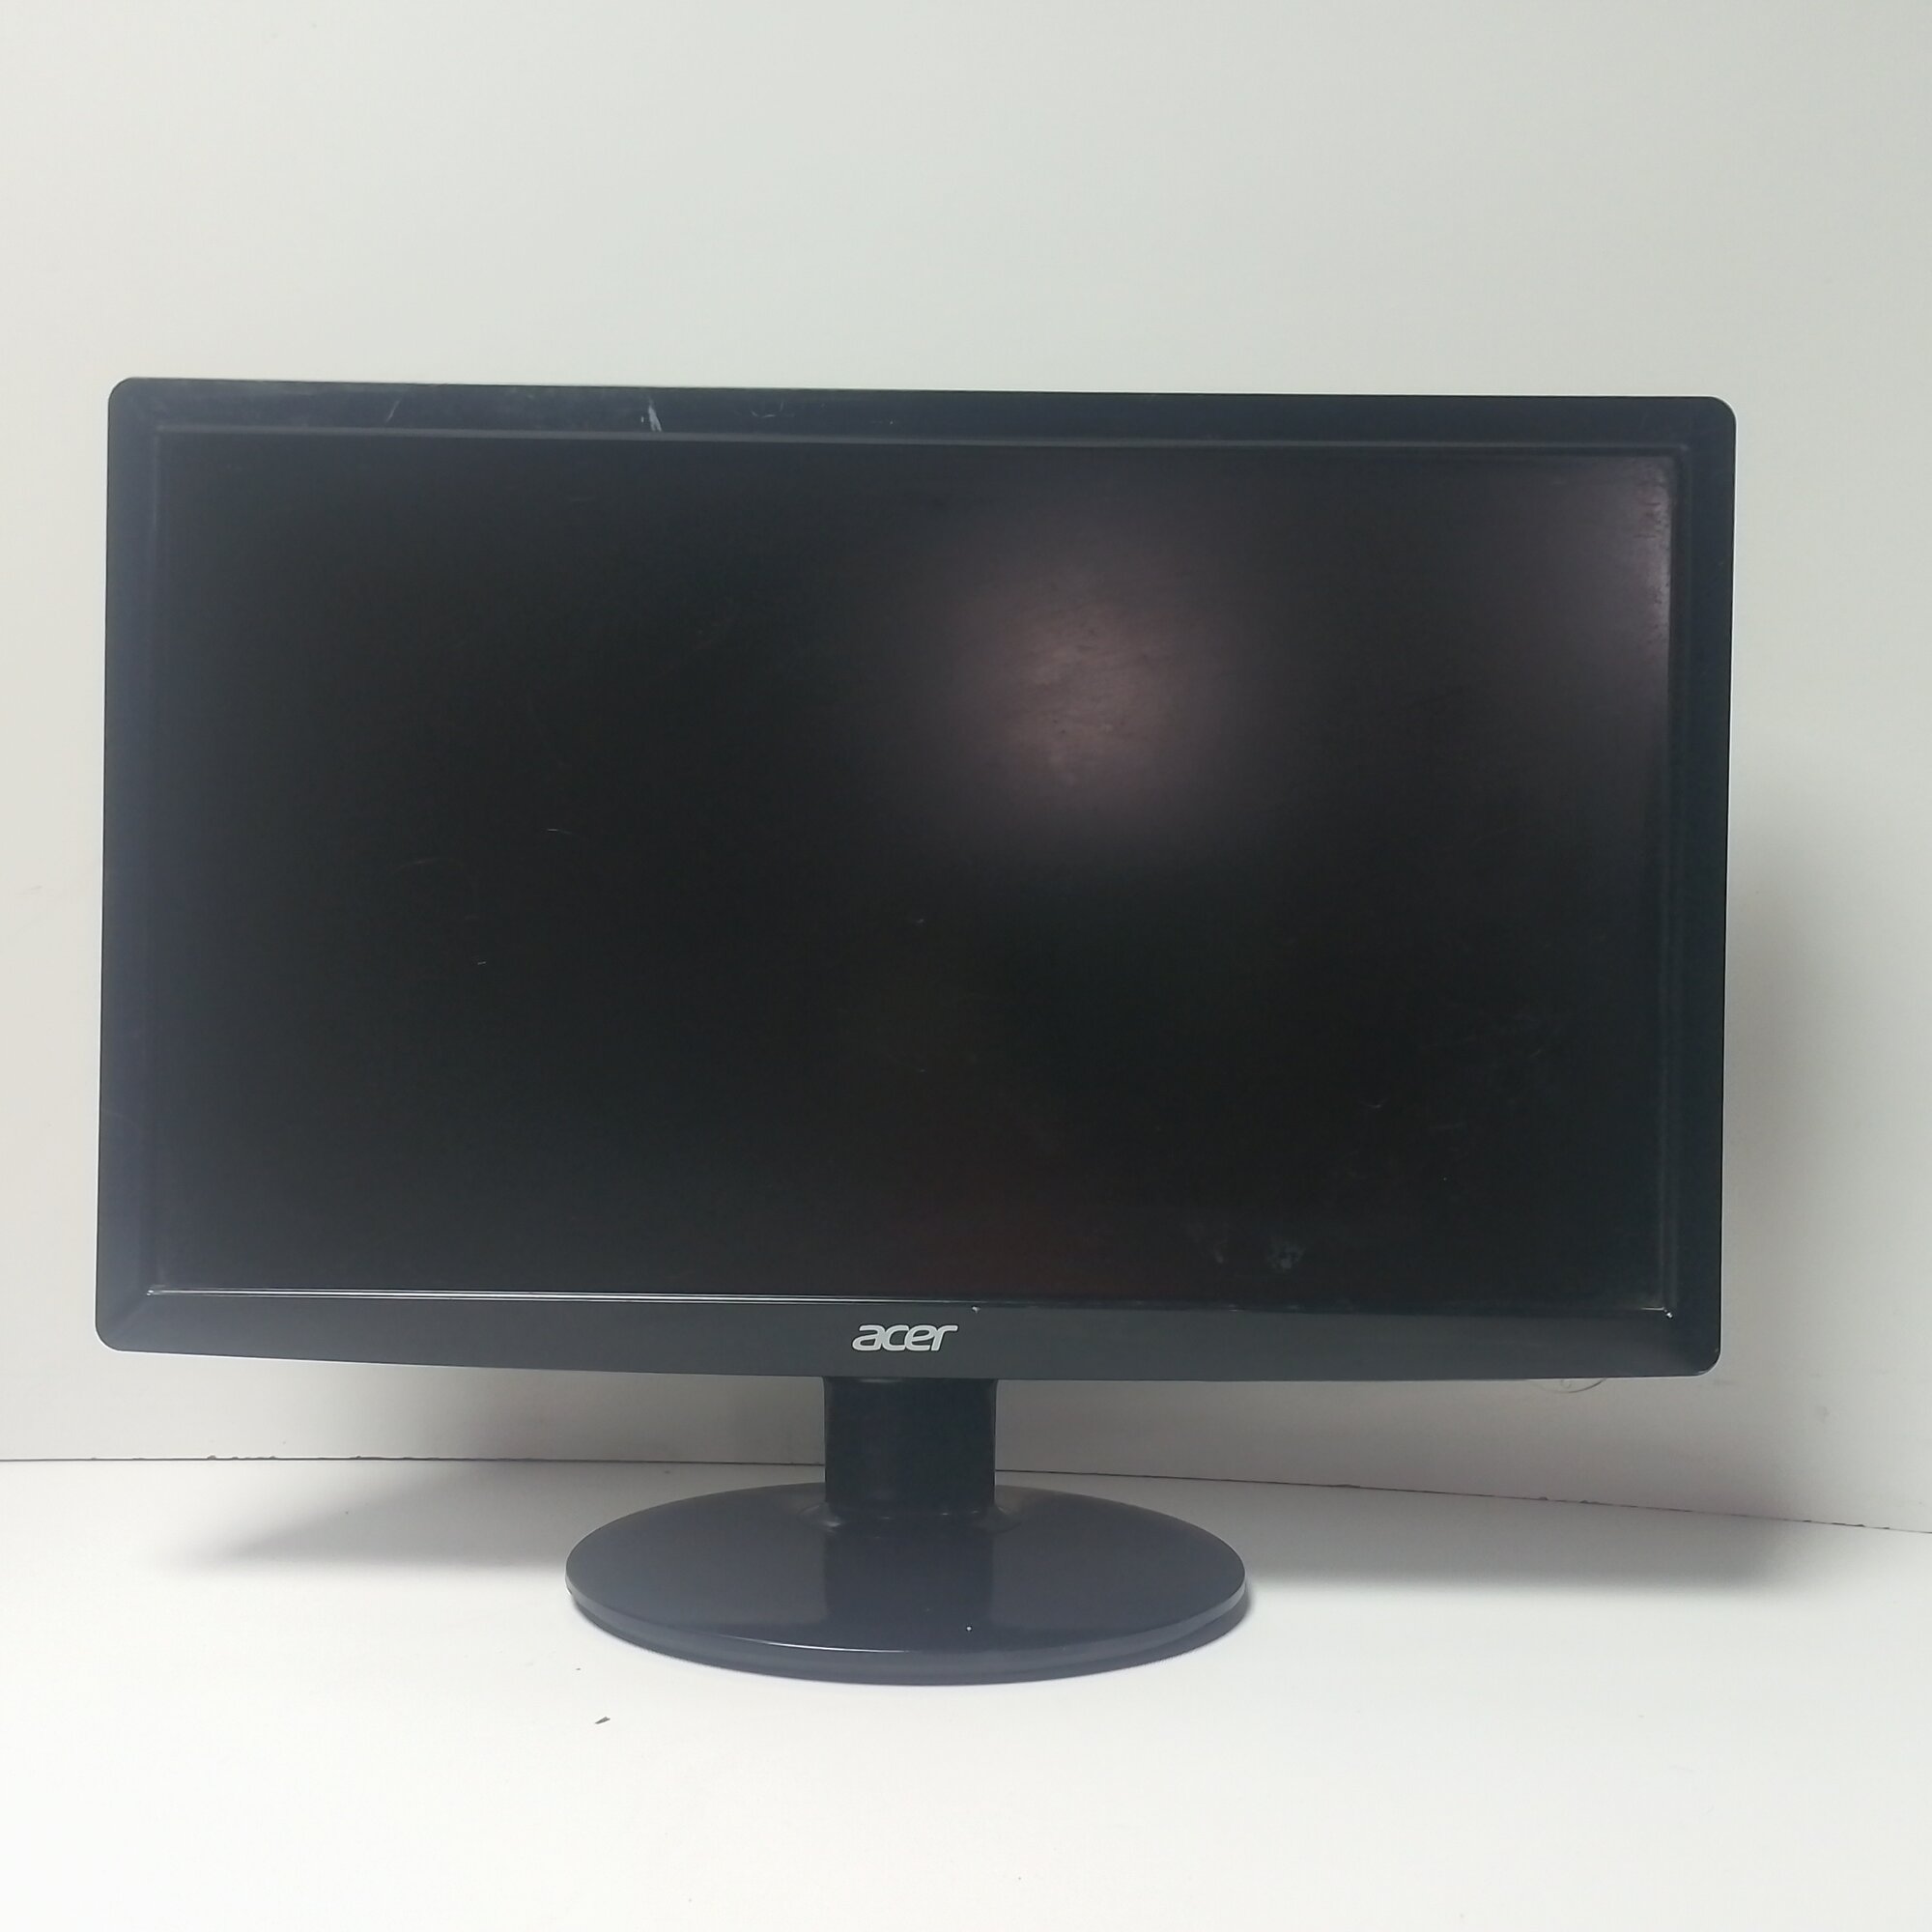 18.5" ЖК монитор Acer S191HQL b (LCD, 1366x768, D-Sub)